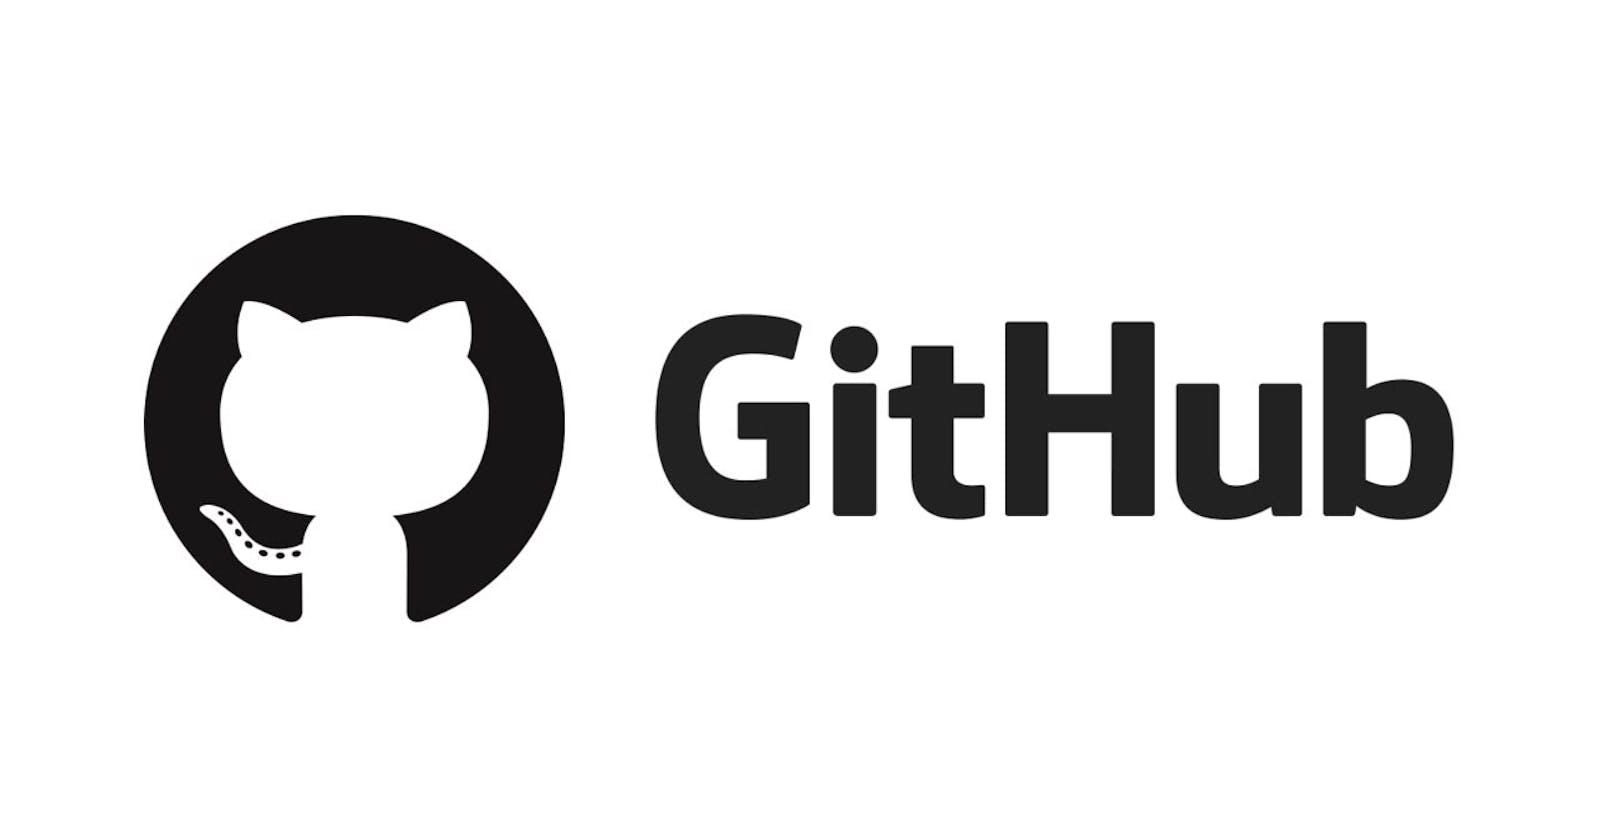 CheatSheet of GitHub